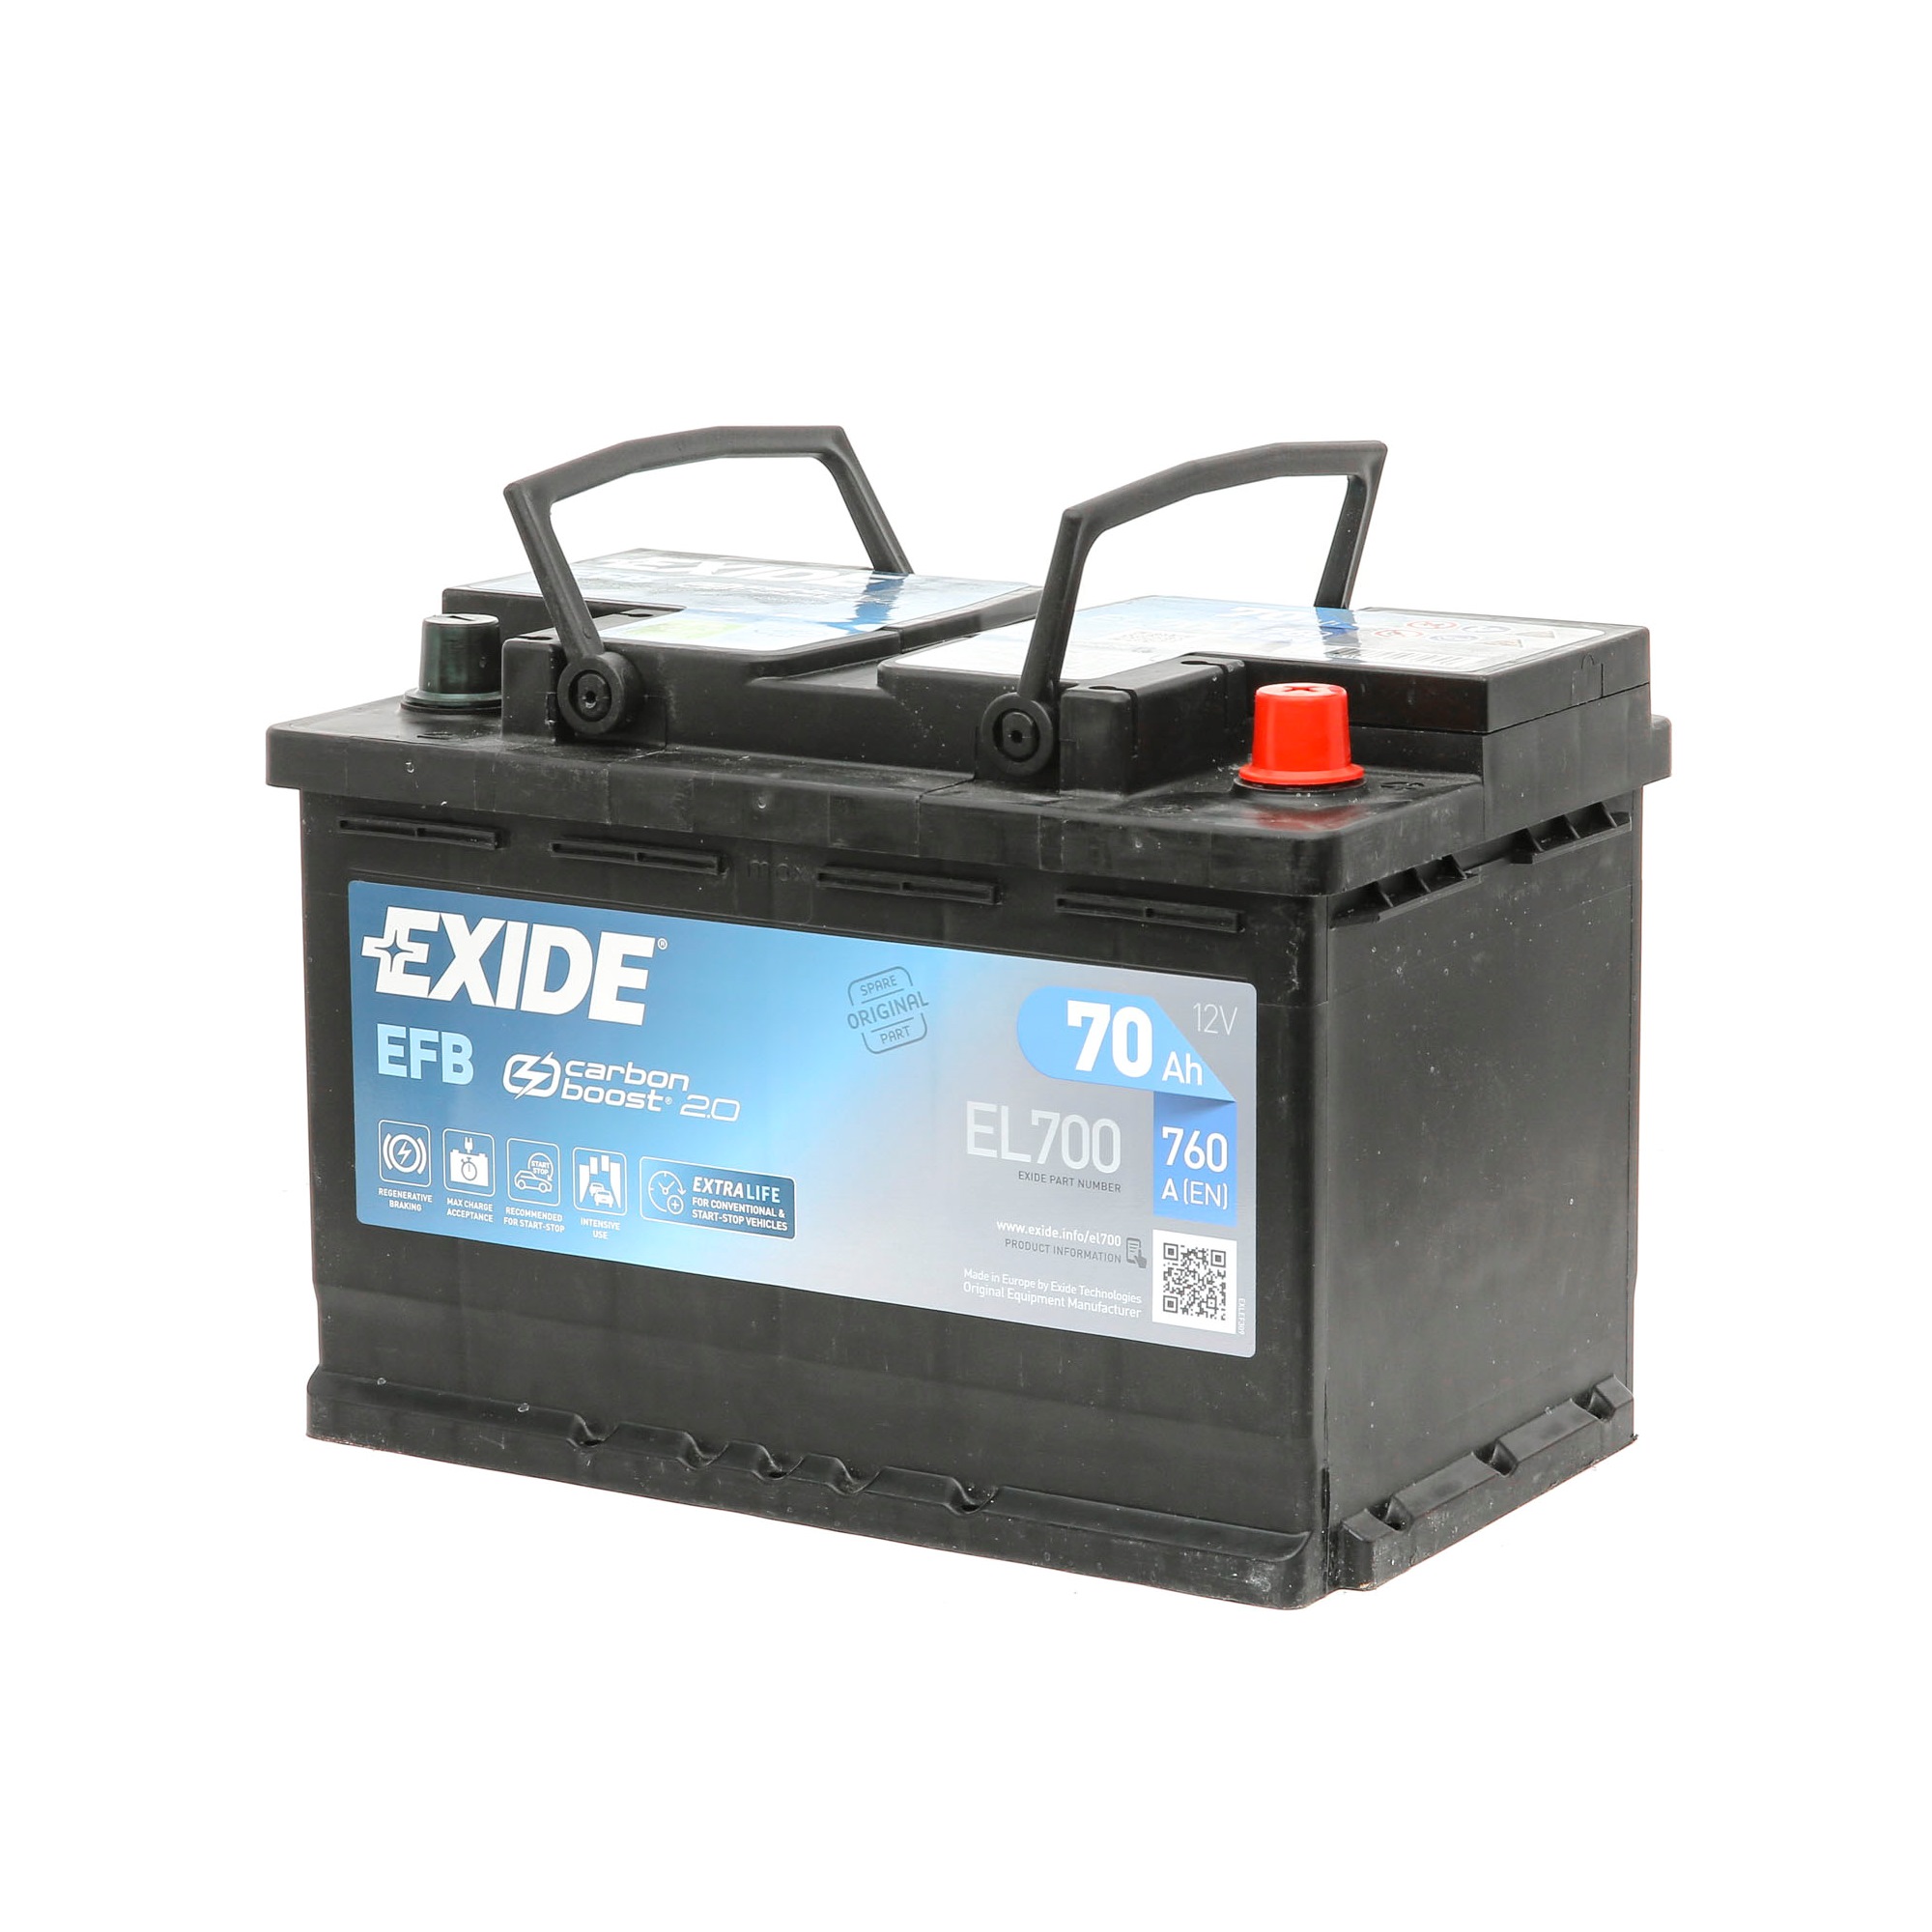 EFB60SS EXIDE EL700 SKODA Akkumulator 12V 70Ah 760A B13 EFB-Batterie